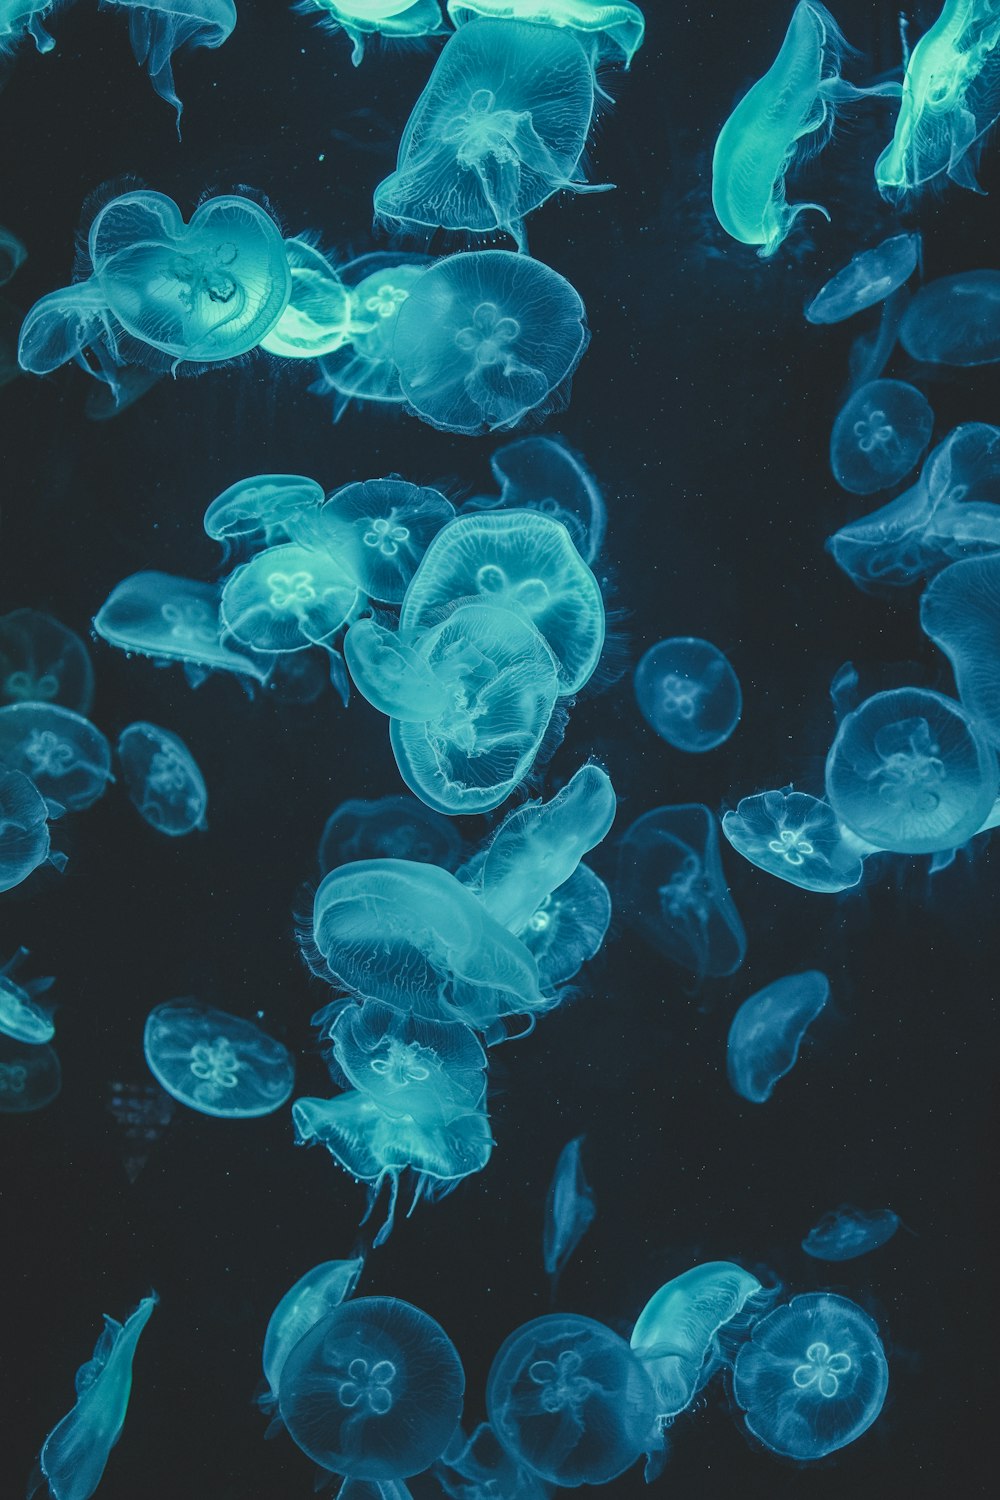 Un gruppo di meduse che nuotano nell'acqua